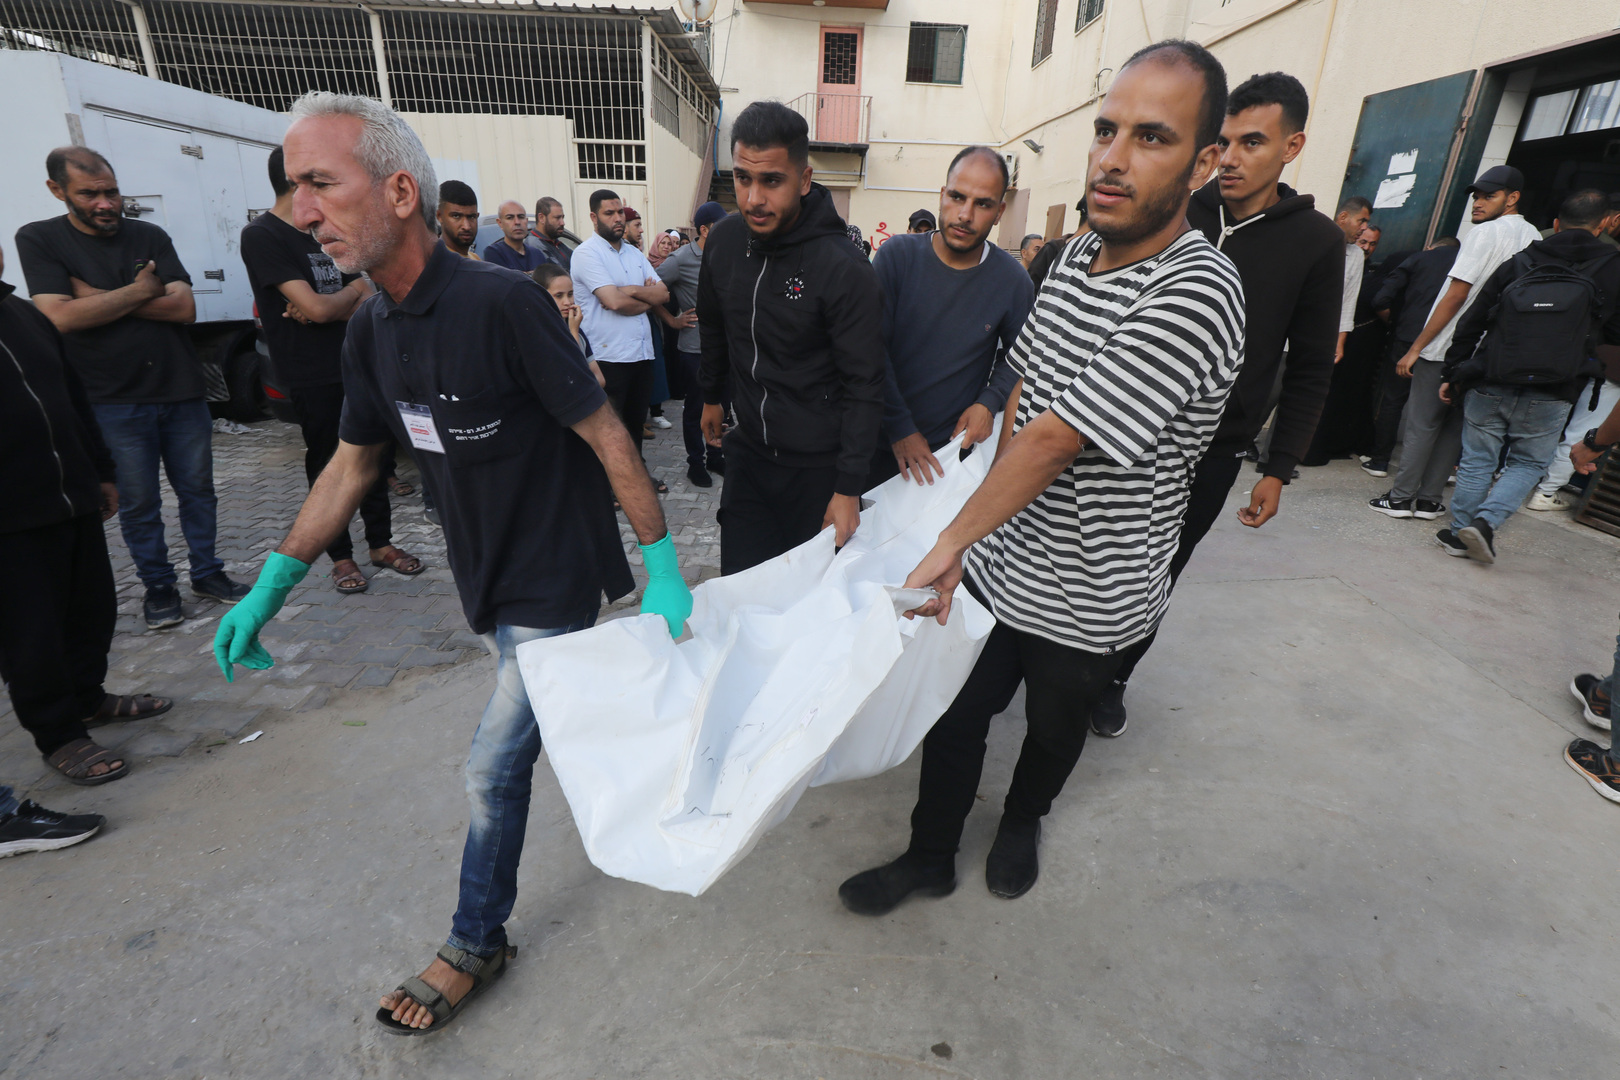 عشرات القتلى والجرحى في قصف إسرائيلي استهدف منزلين في غزة